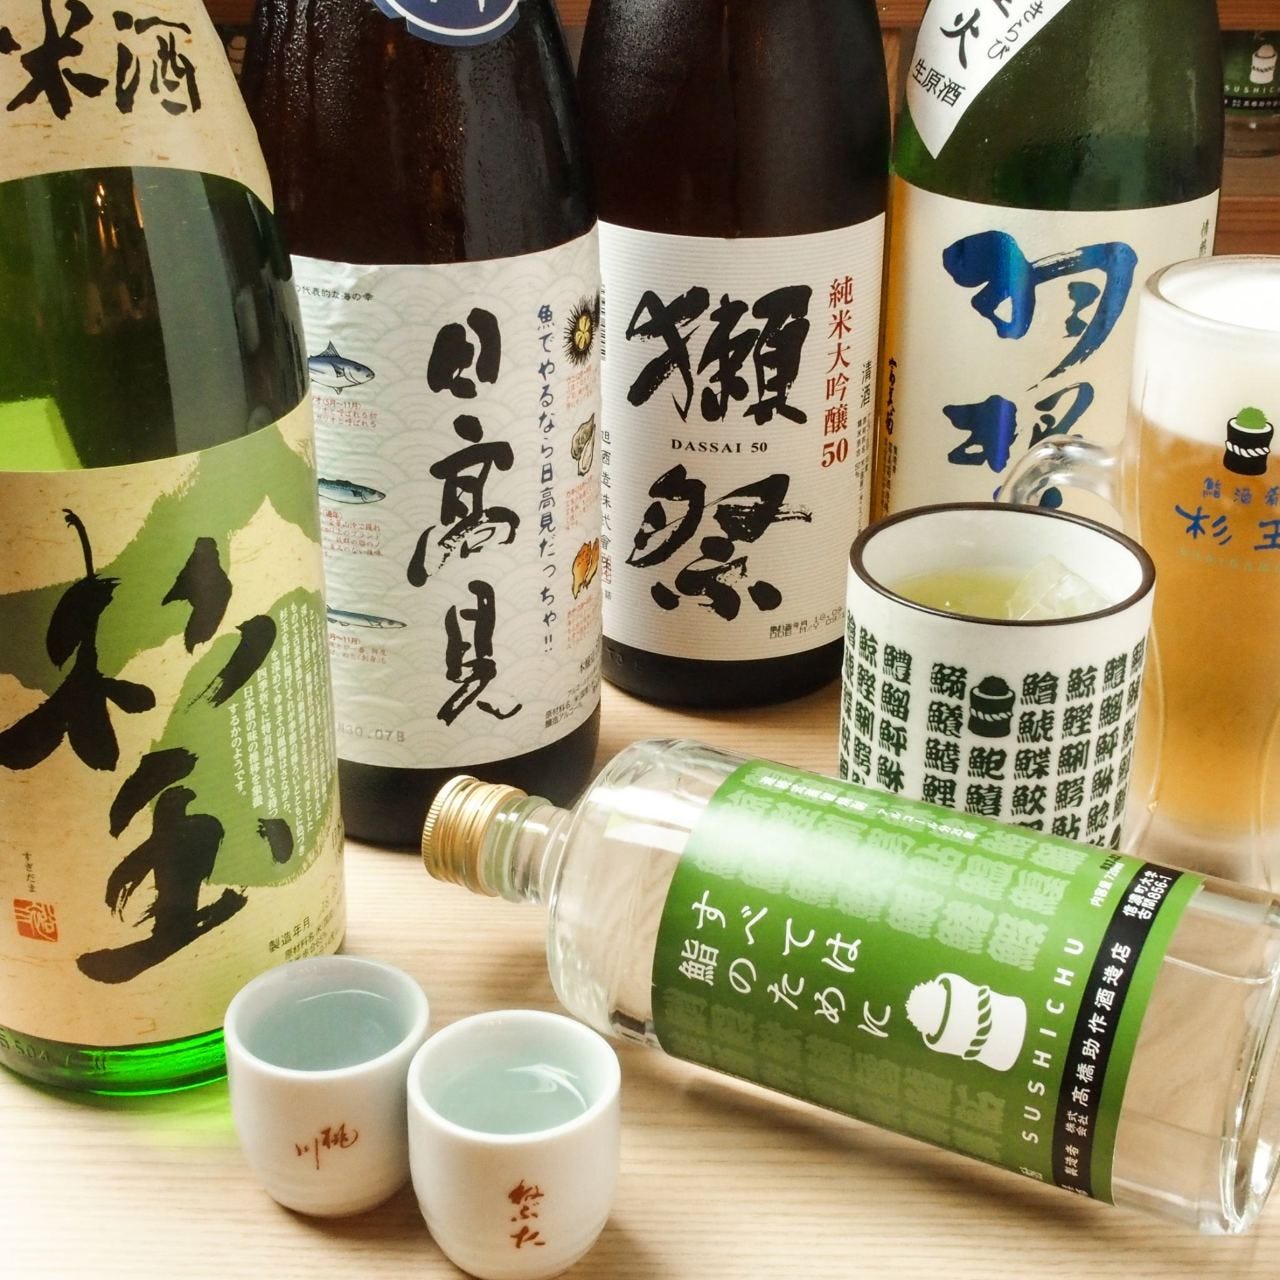 鮨・酒・肴 杉玉 大船